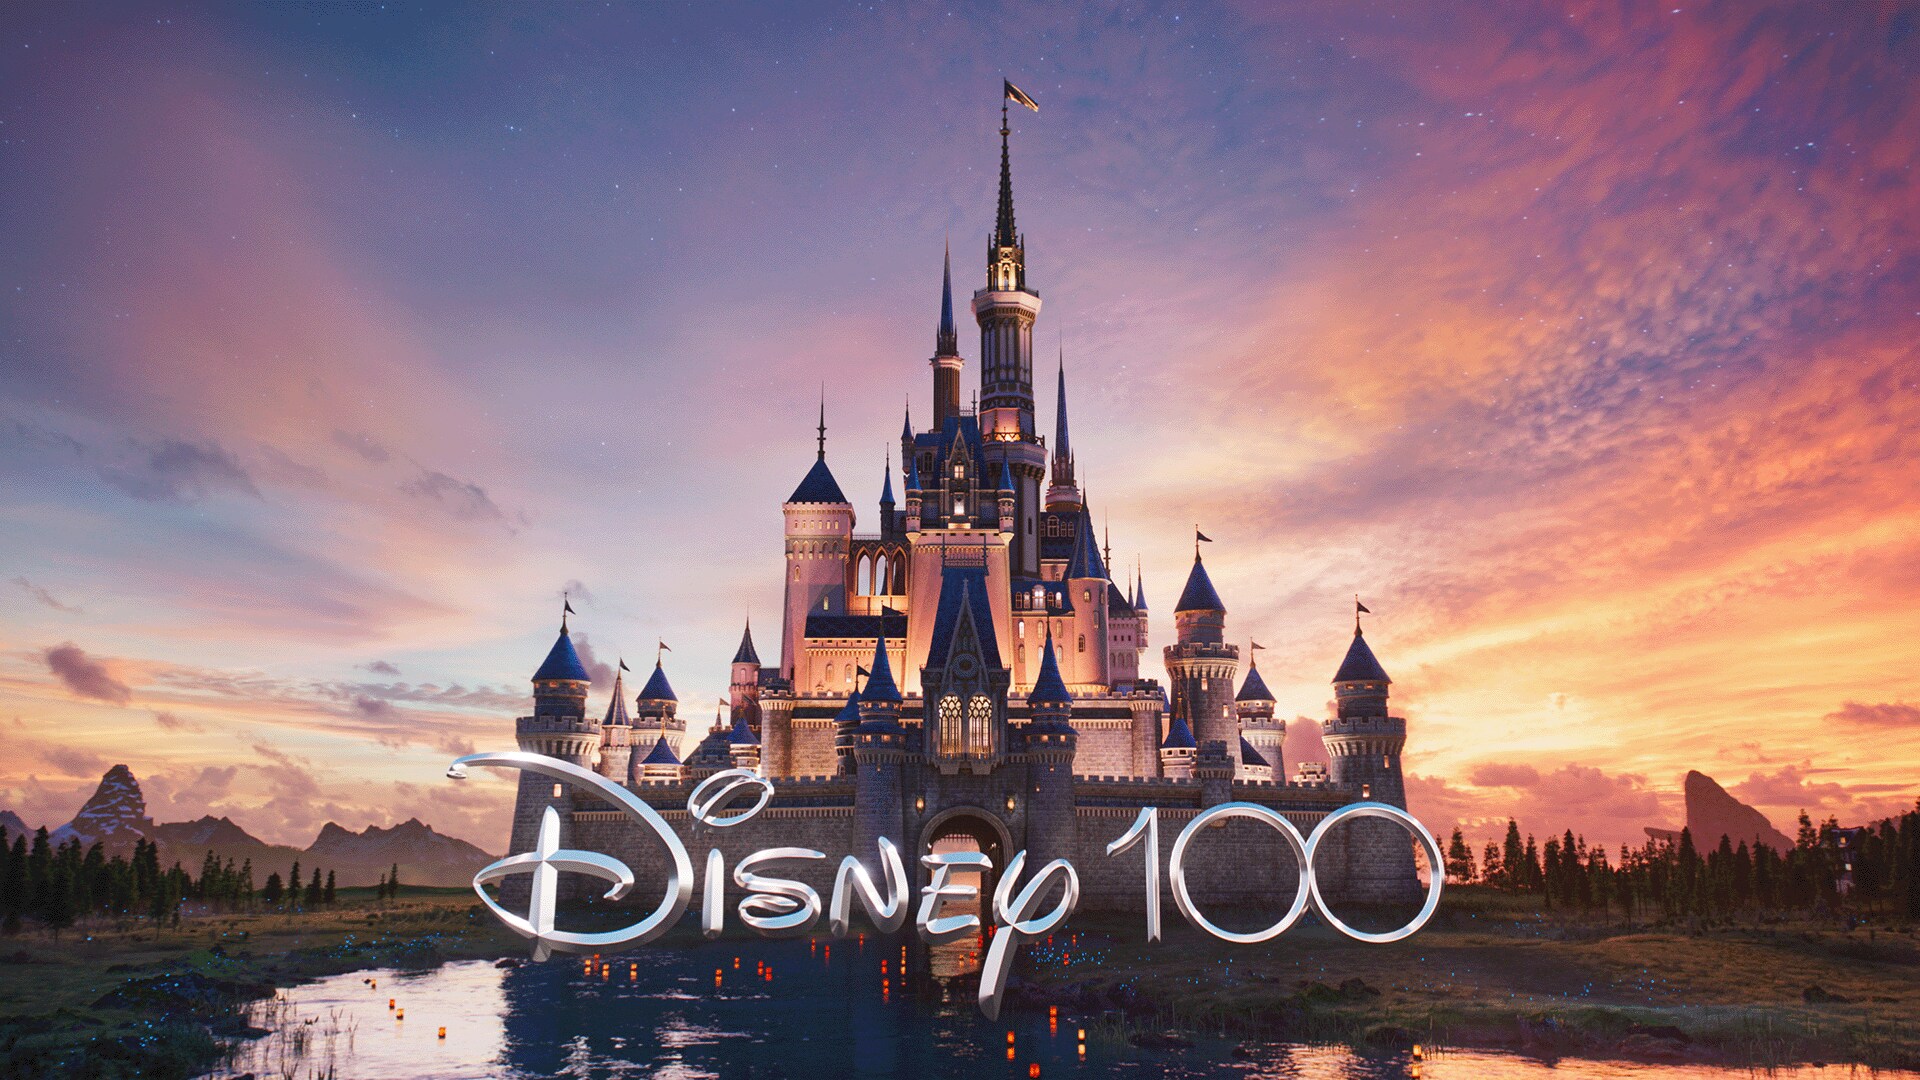 Disney100 Special Look